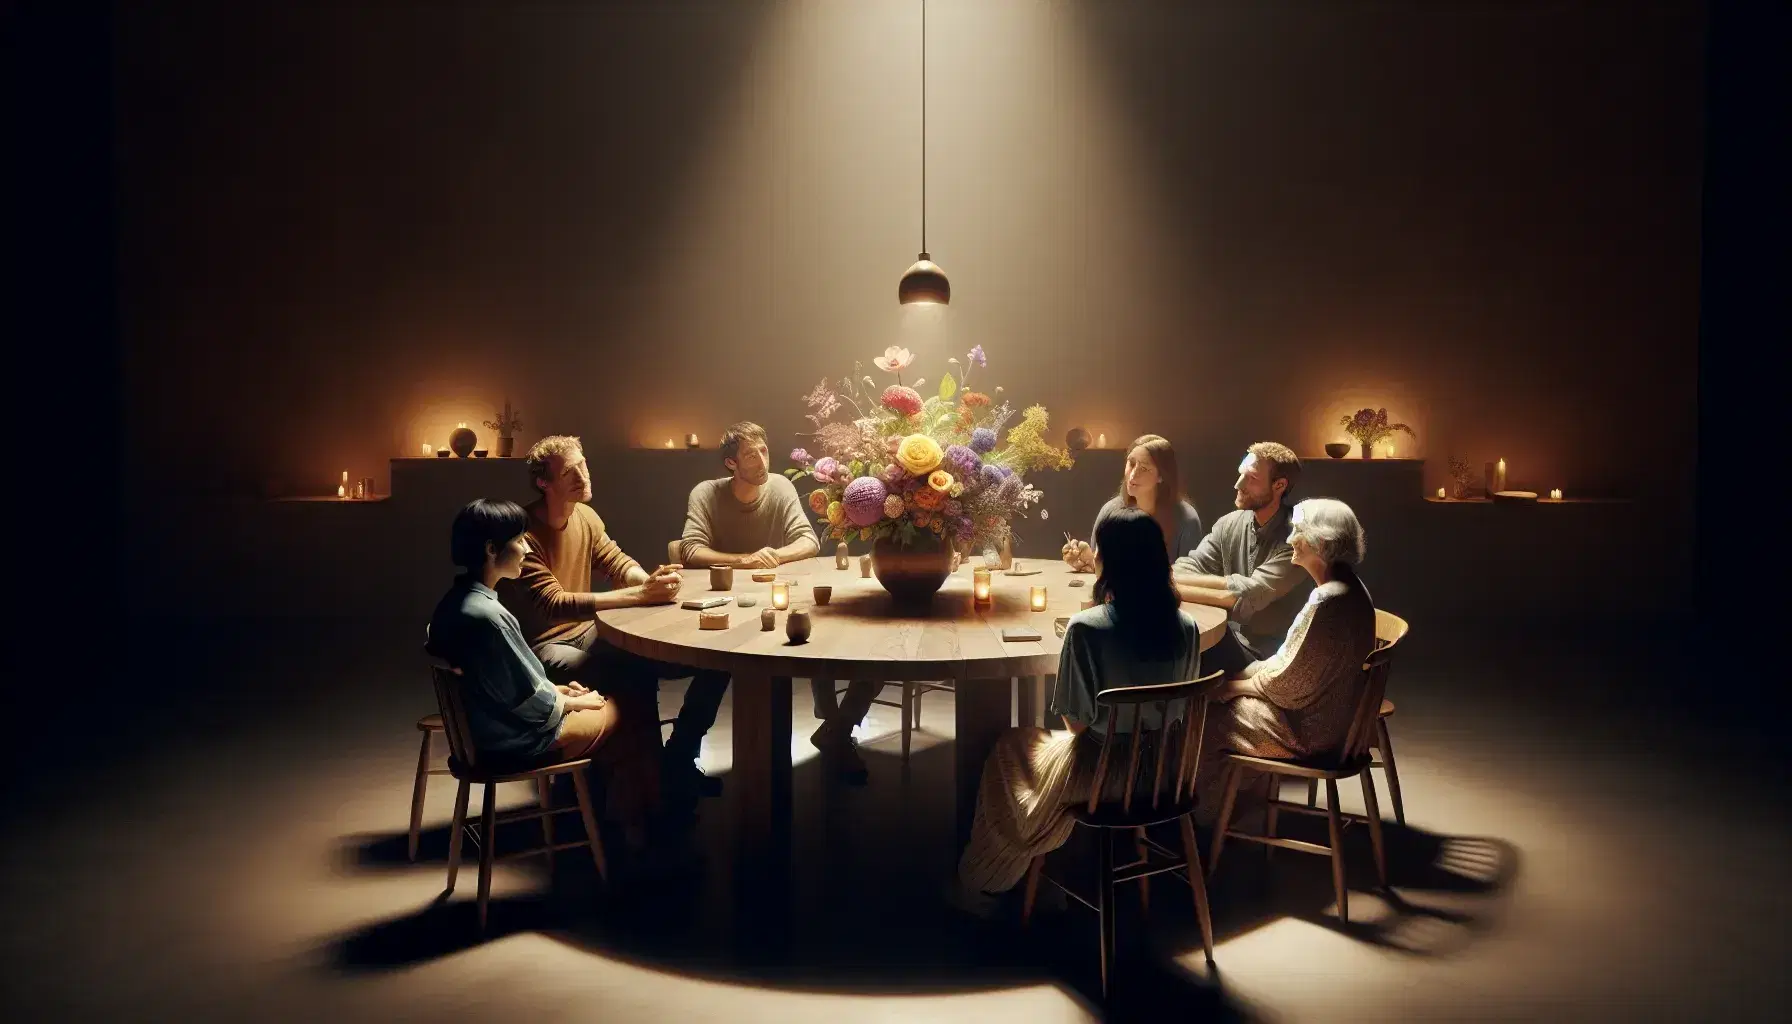 Grupo de cinco personas de diversas edades conversando alrededor de una mesa redonda con un jarrón de flores coloridas, en un ambiente acogedor e iluminado suavemente.